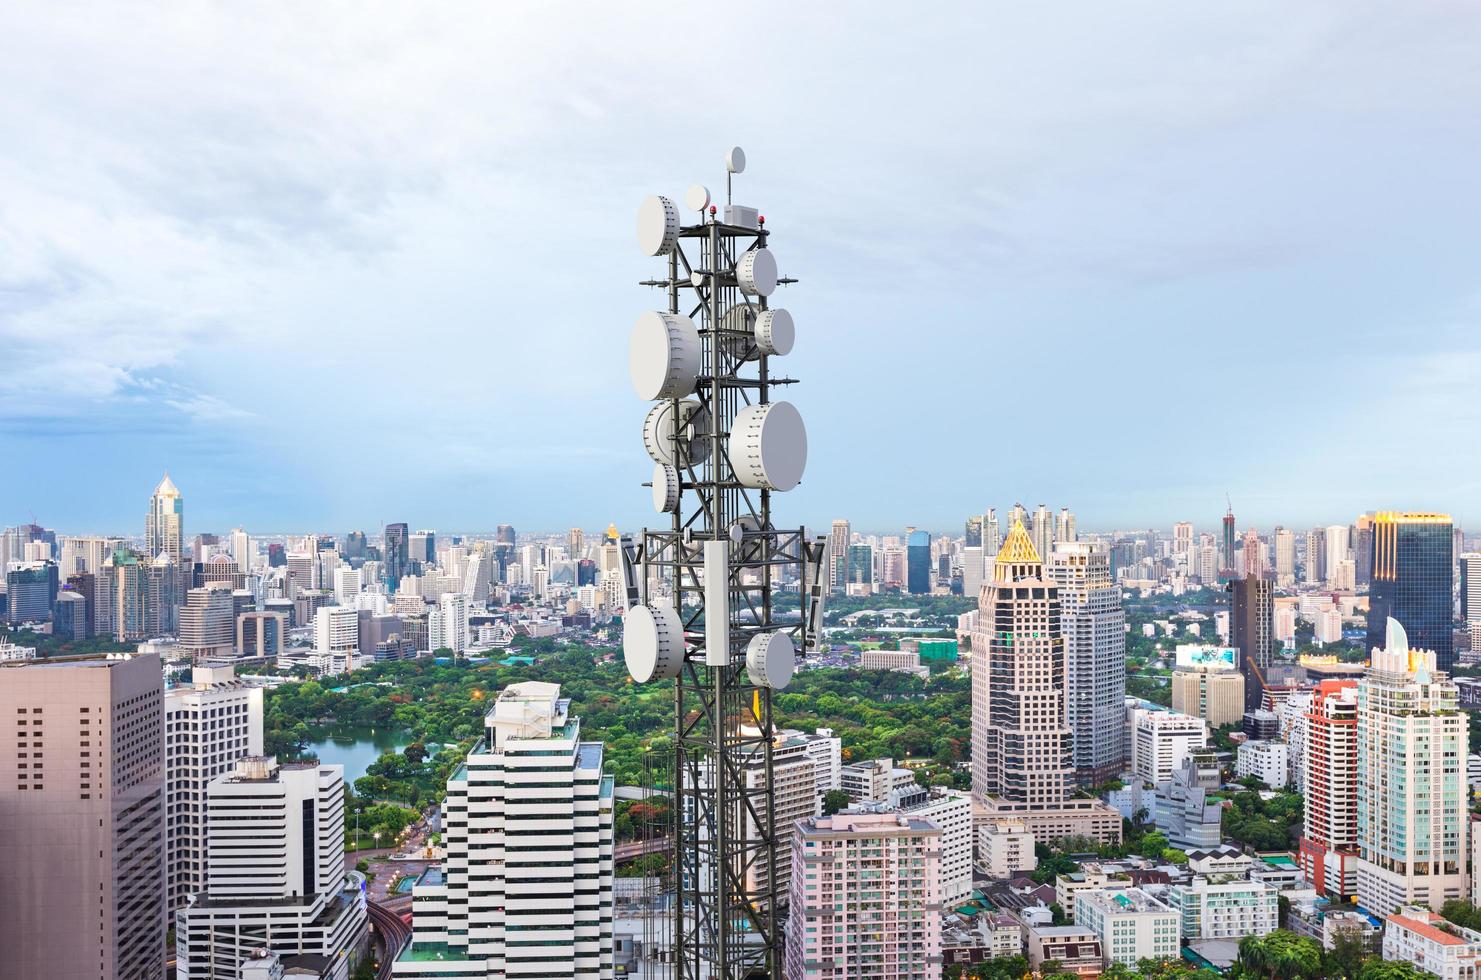 torre de telecomunicações com antena de rede celular 5g no fundo da cidade foto